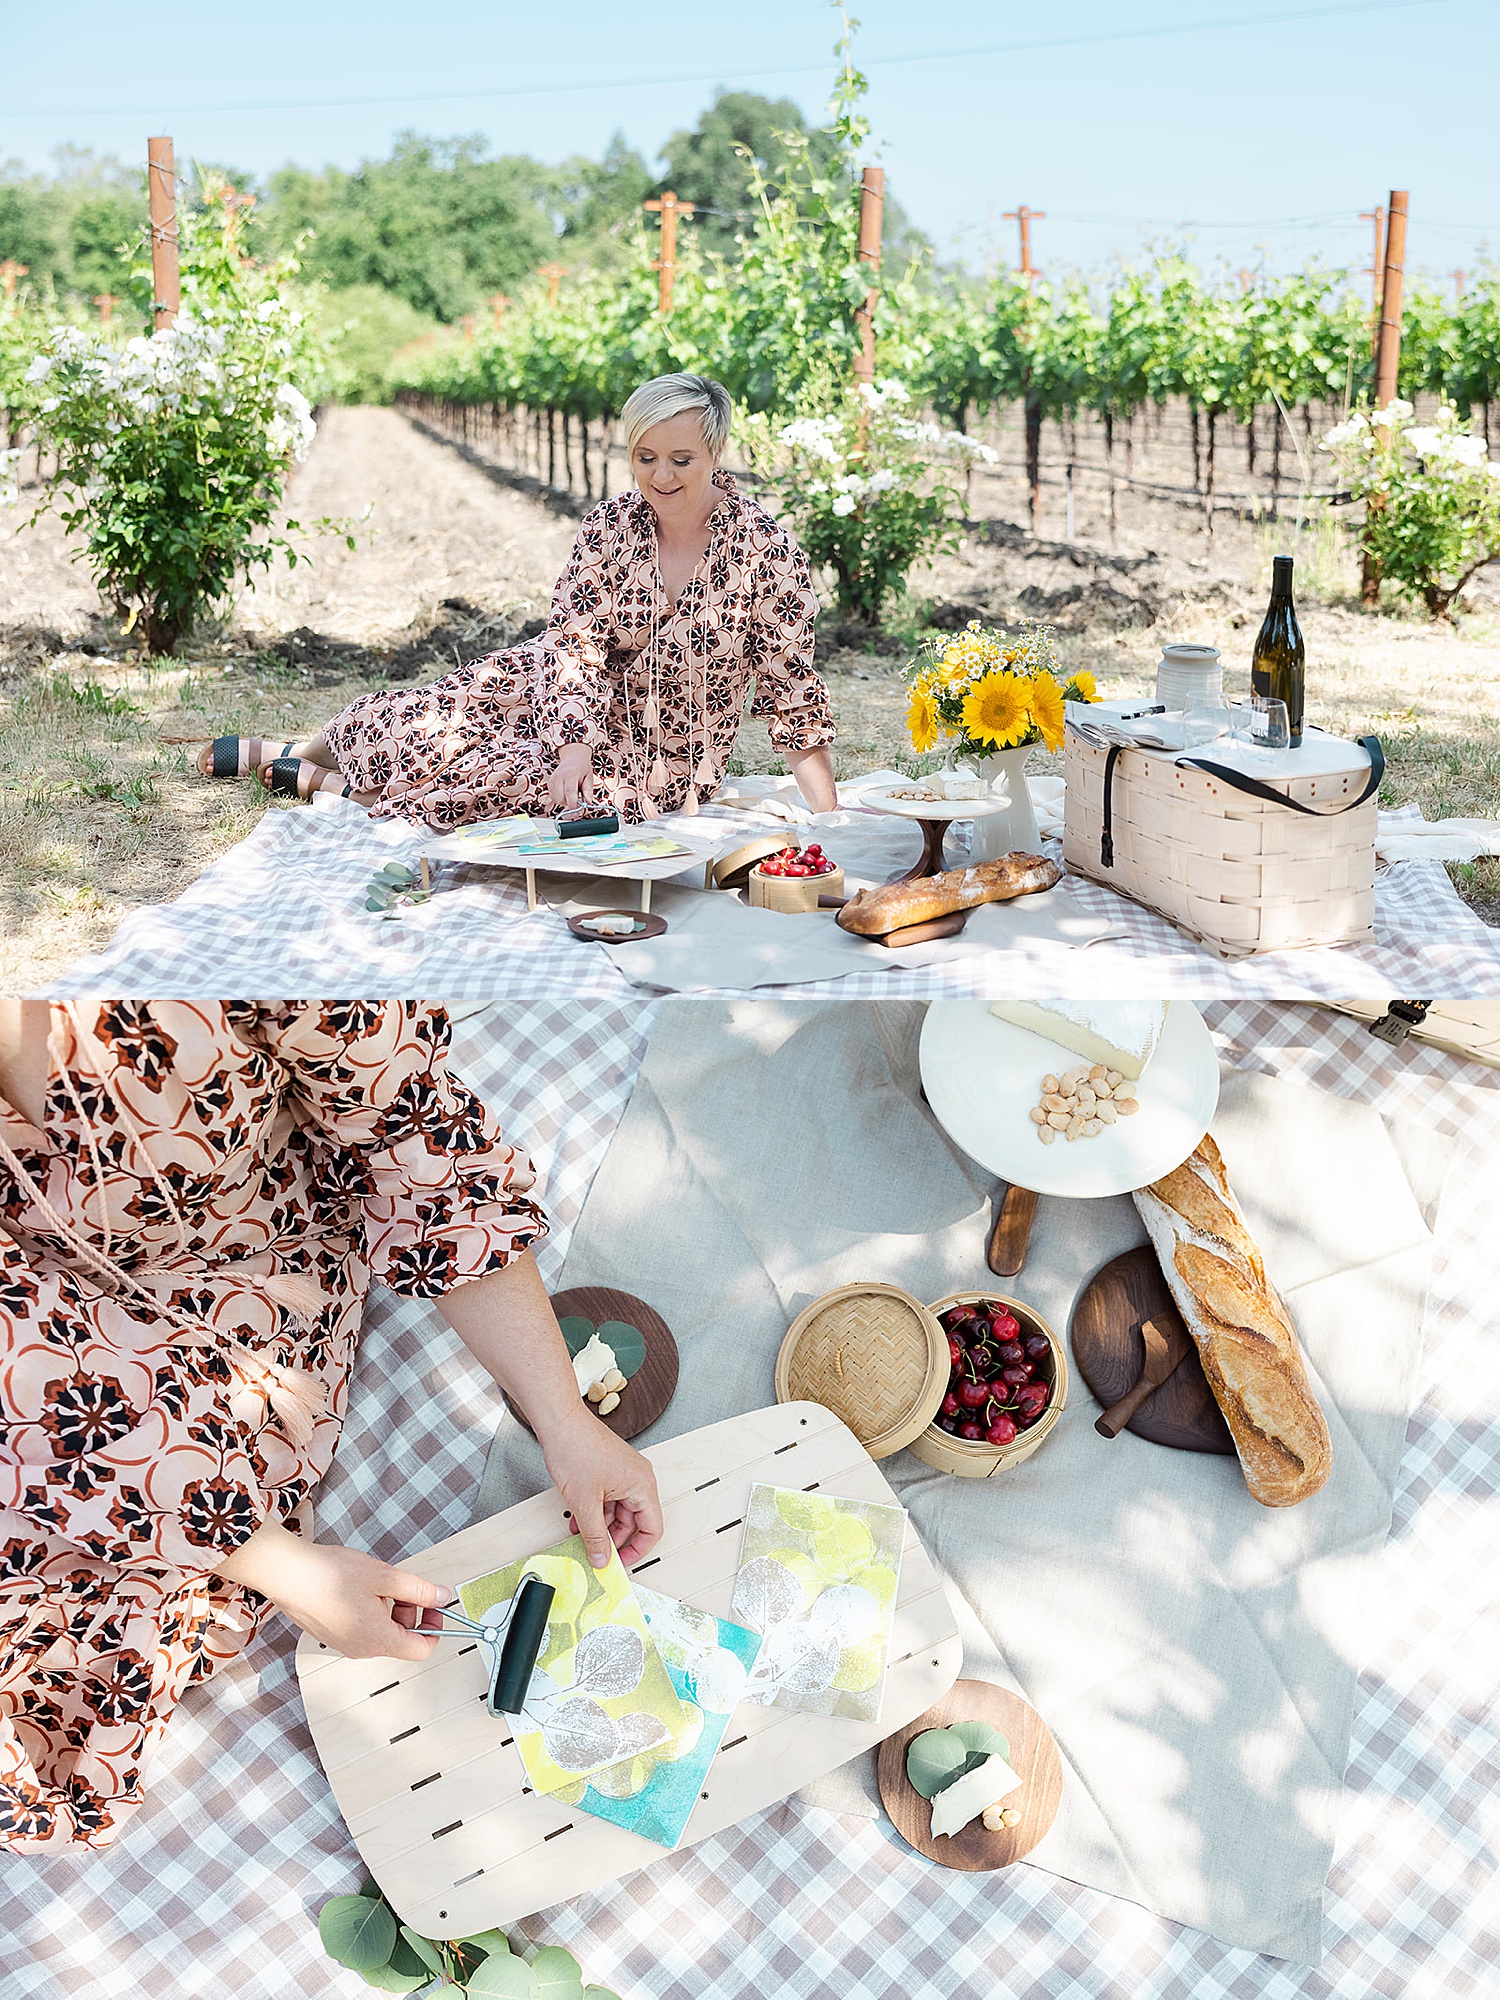 Creative Experience Company has picnic at winery